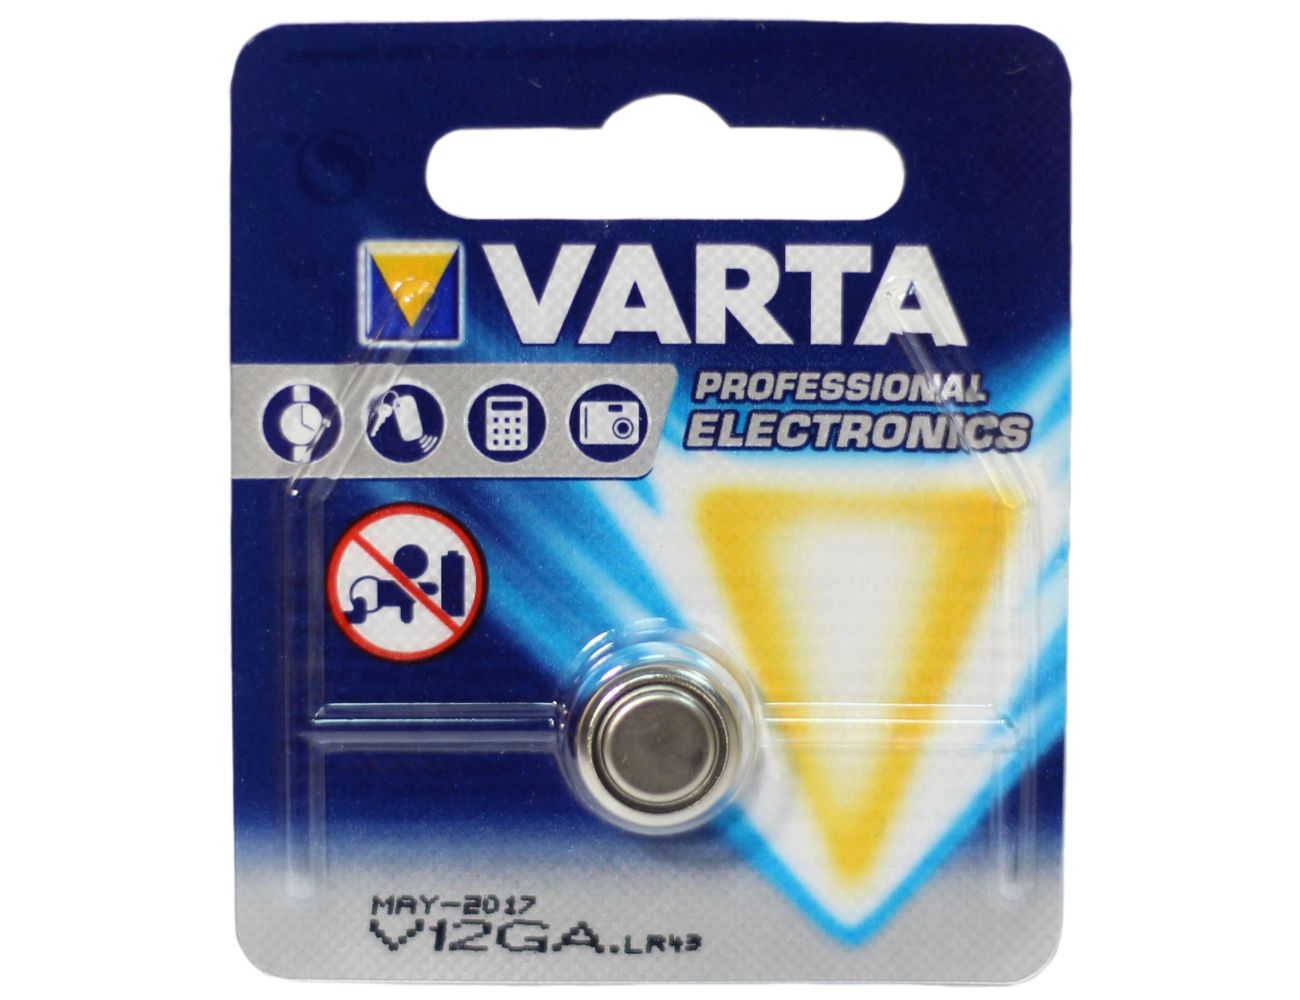 Батарейка Varta V12GA Professional Electronics